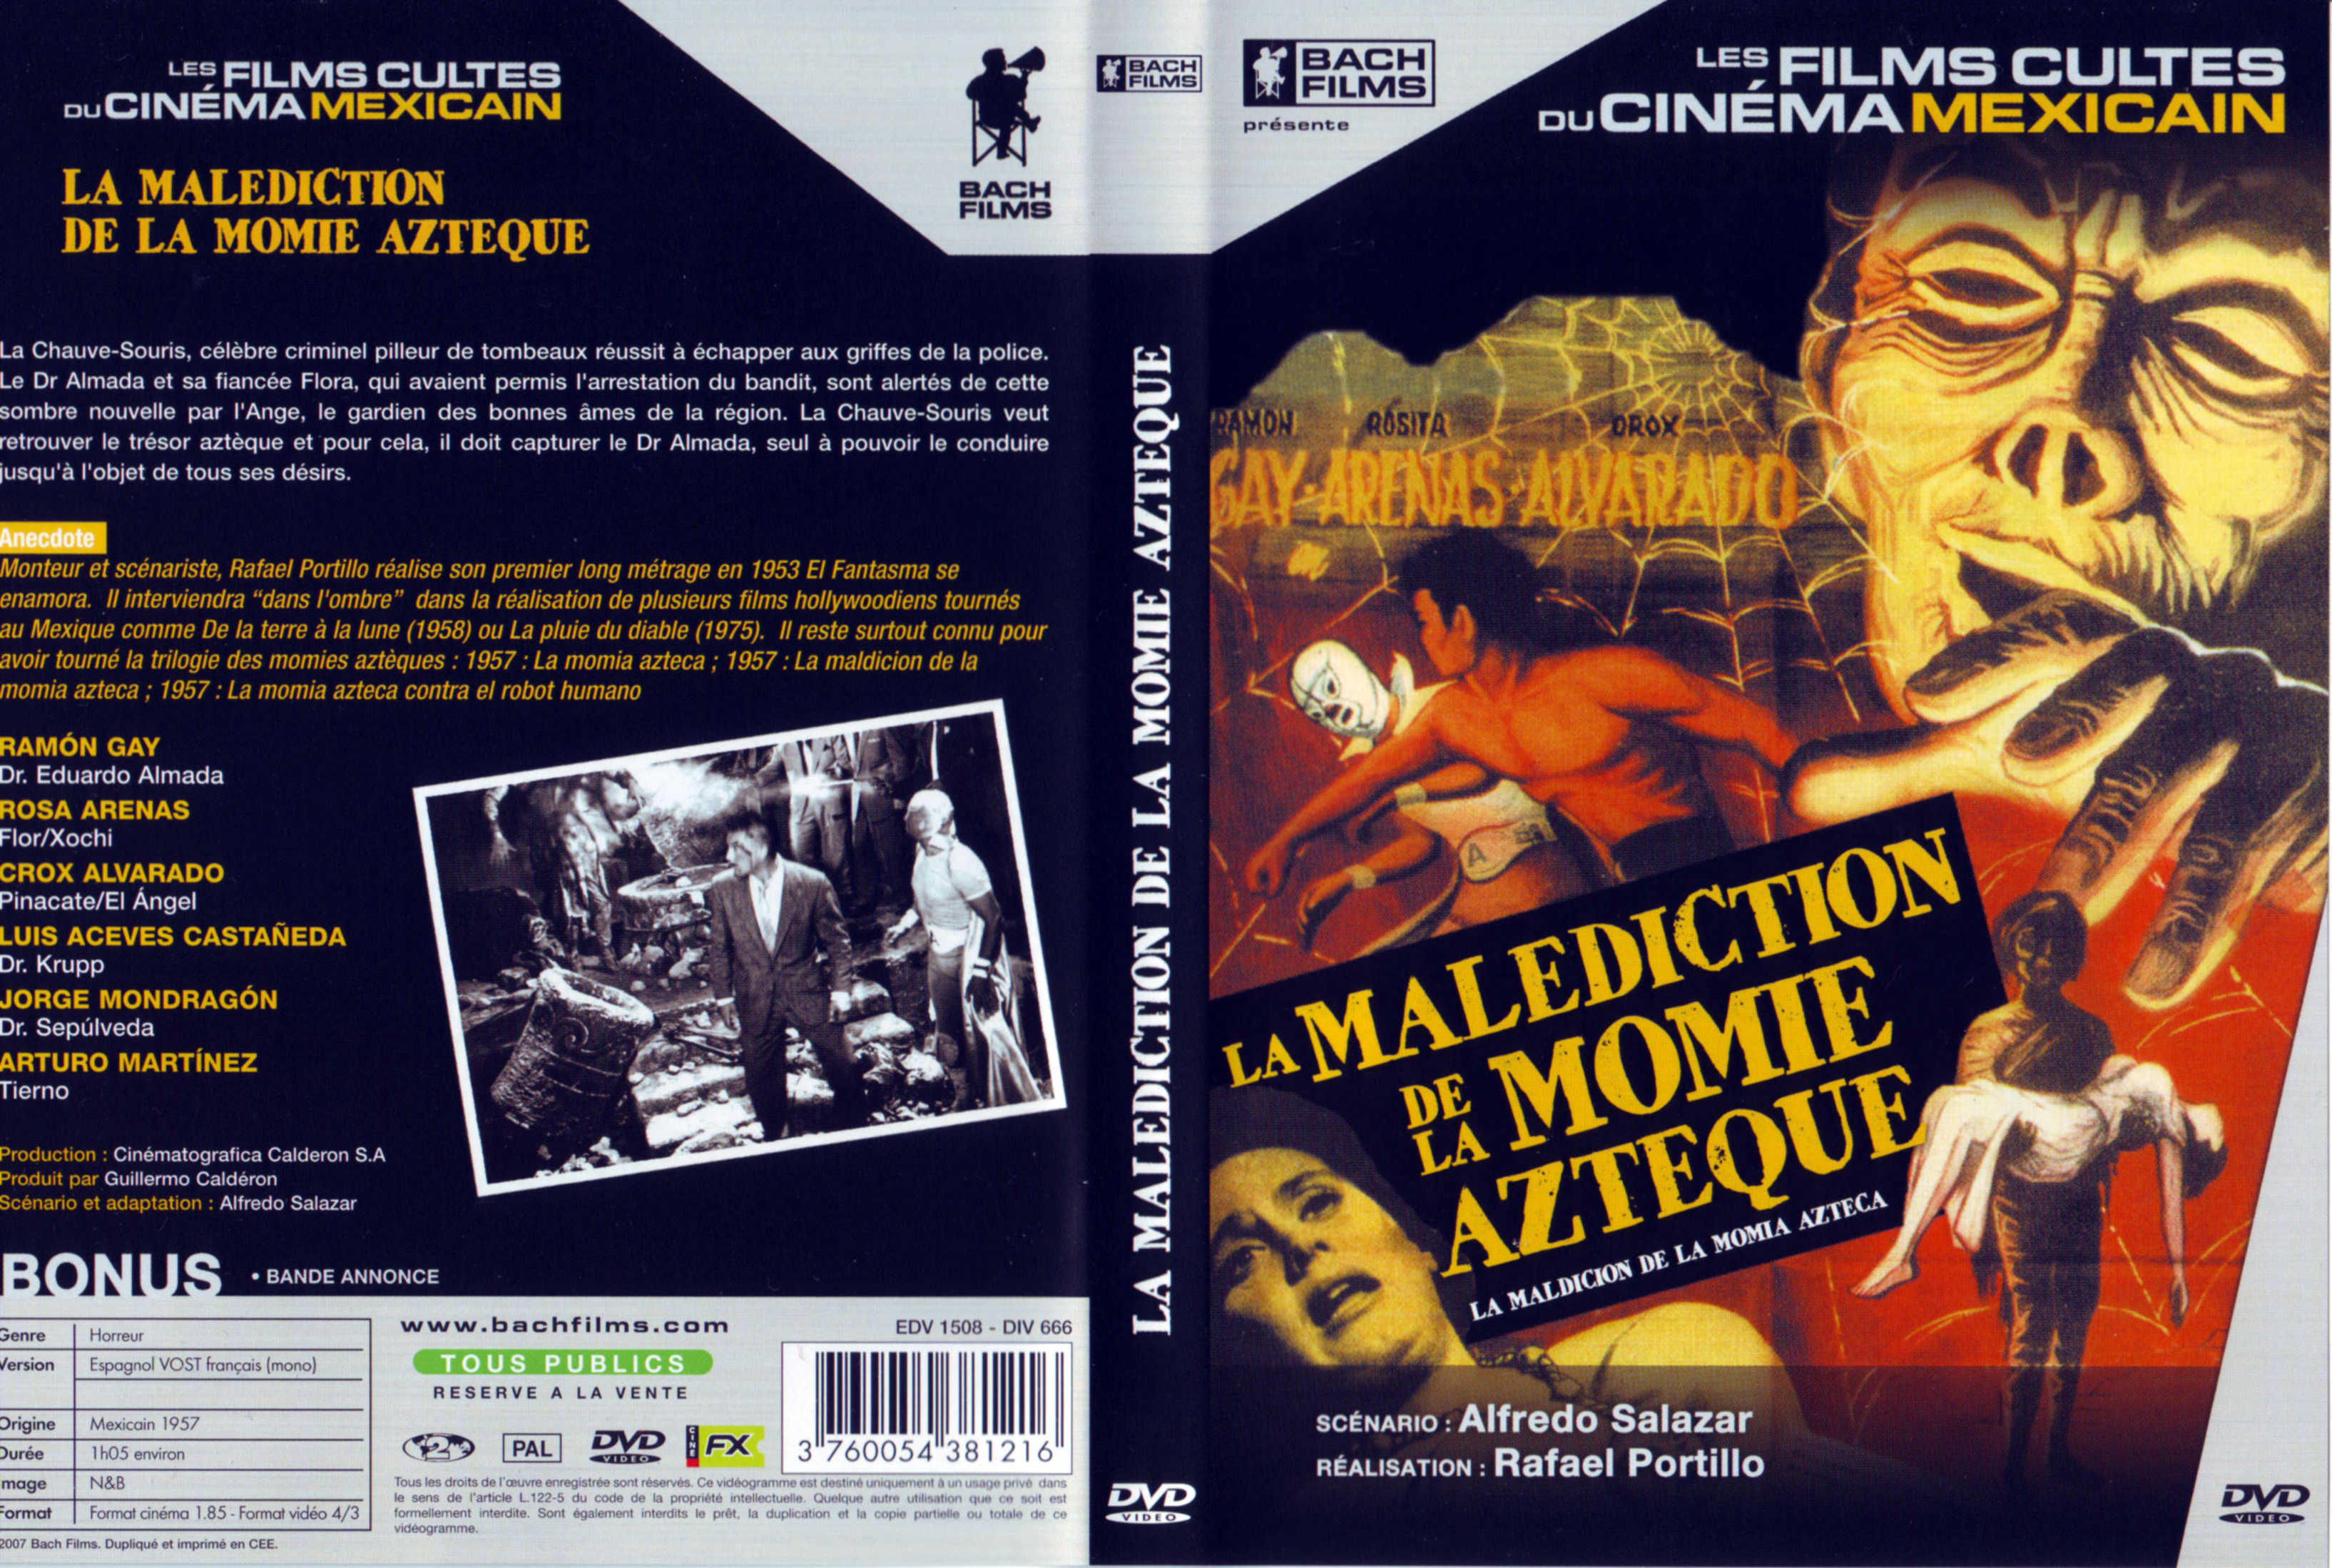 Jaquette DVD La maldiction de la momie aztque